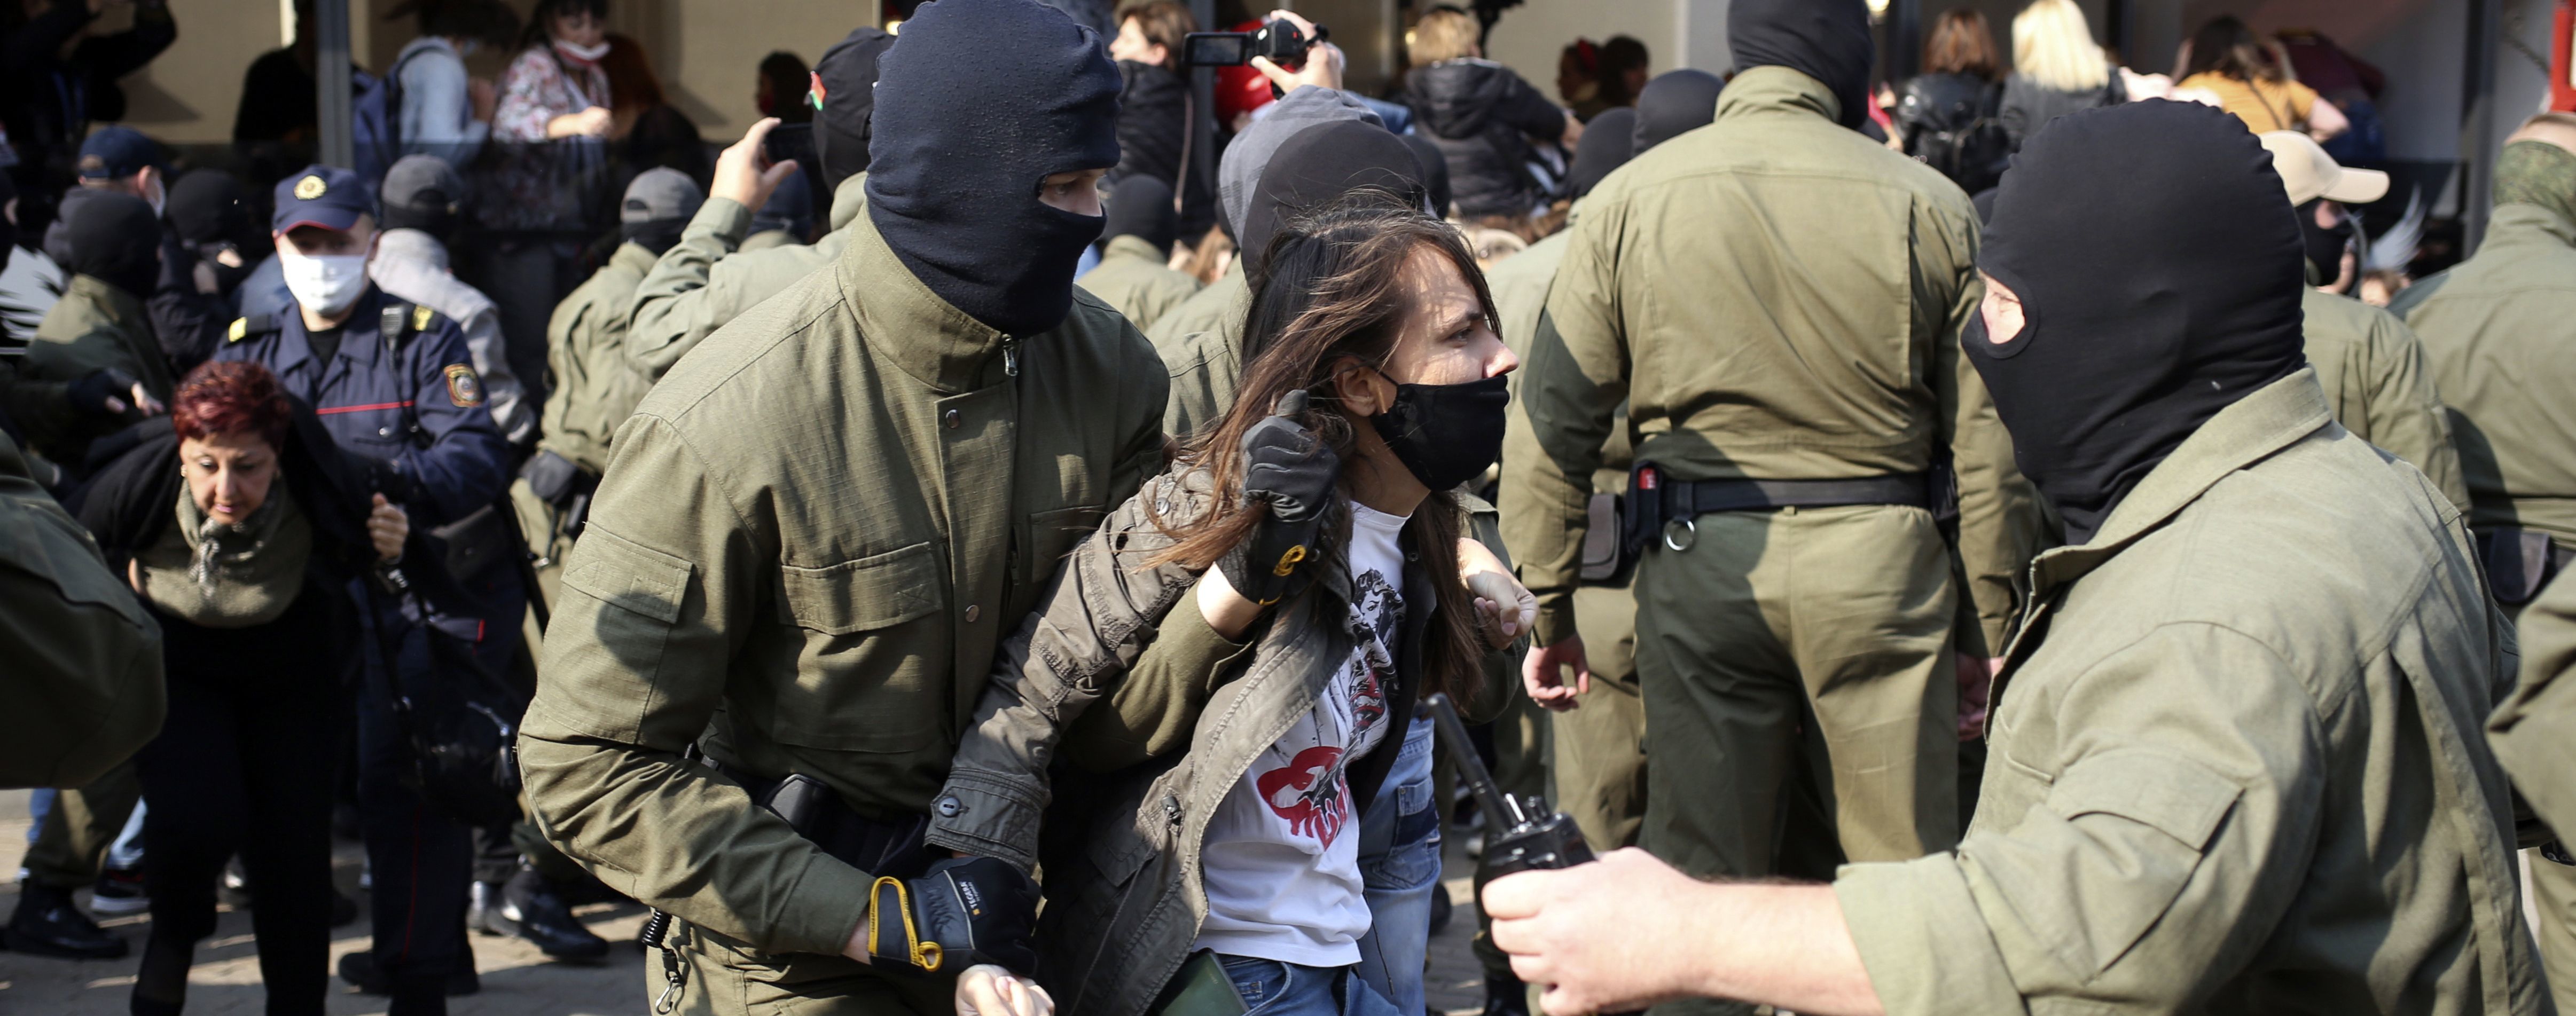 Не жалели ни молодых, ни пожилых: как ОМОН разгонял Марш женщин в Минске